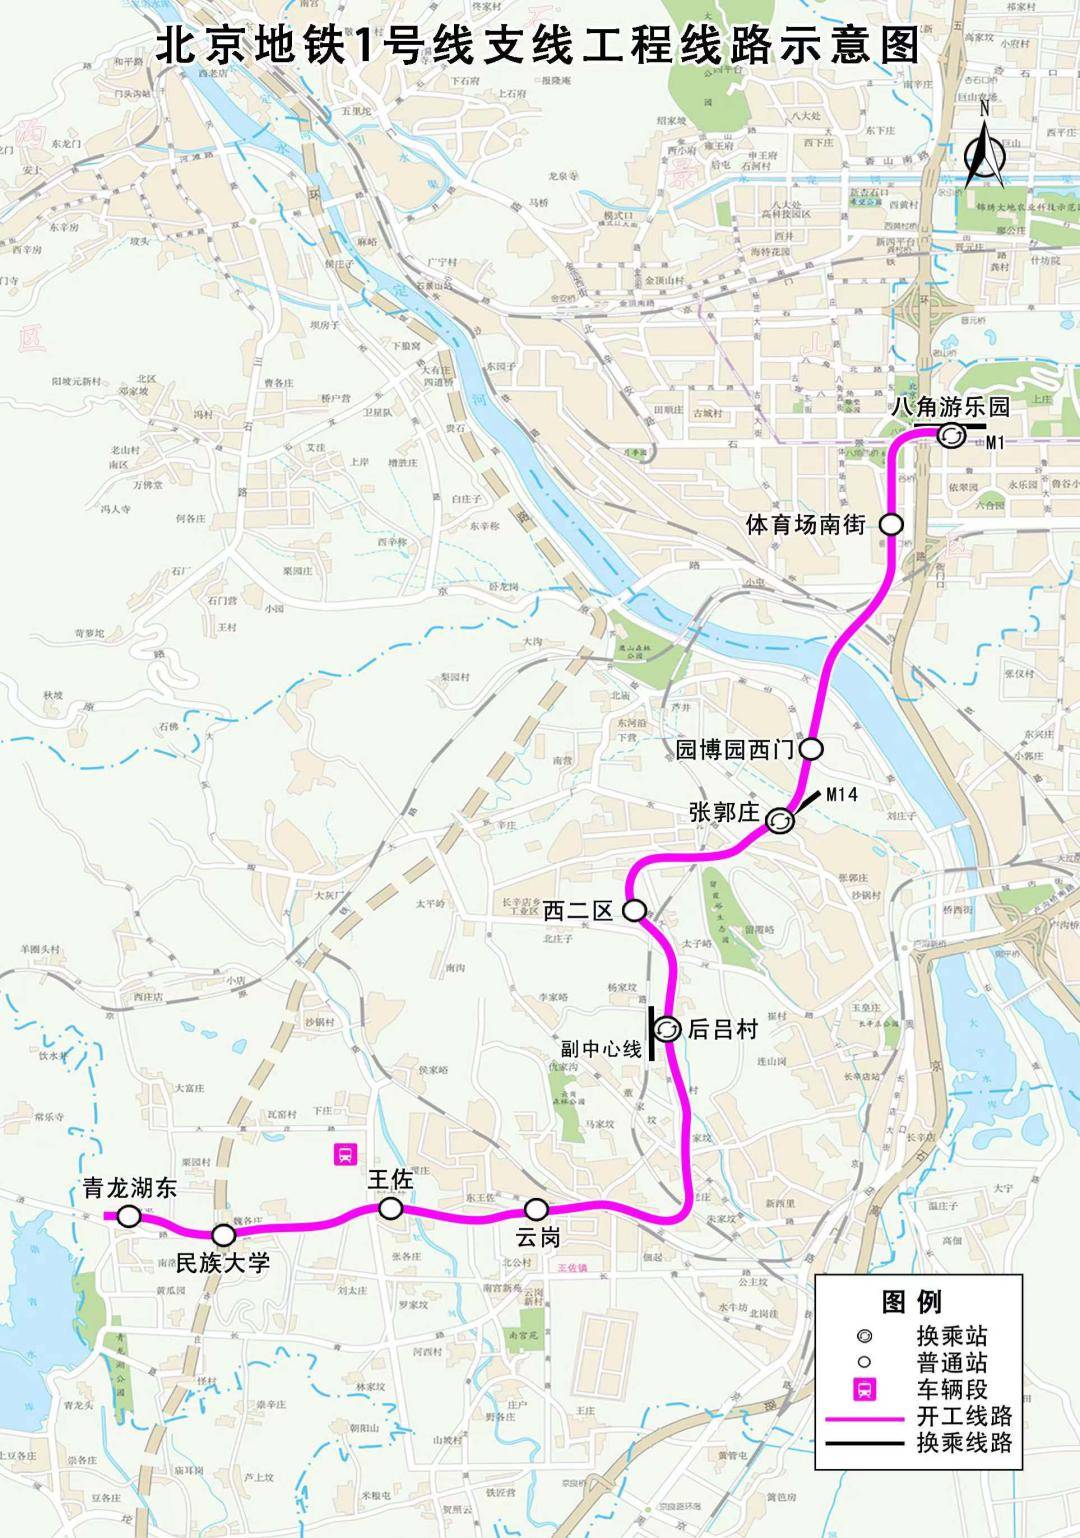 今年北京地铁建设计划发布!